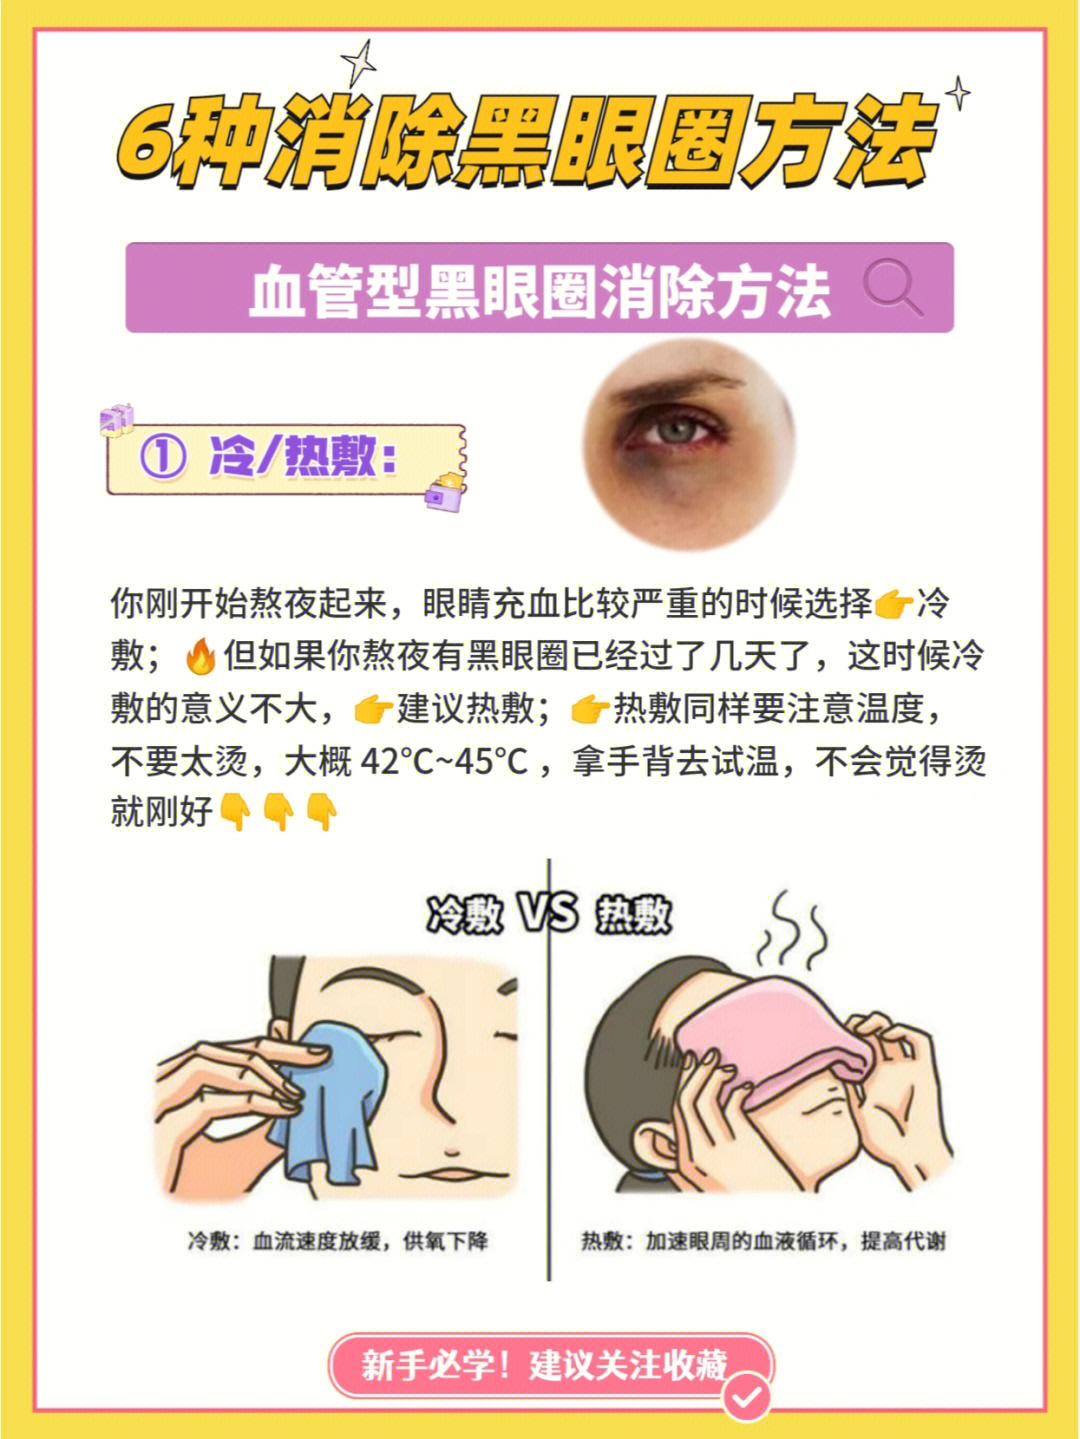 6种消除黑眼圈方法血管型黑眼圈消除法